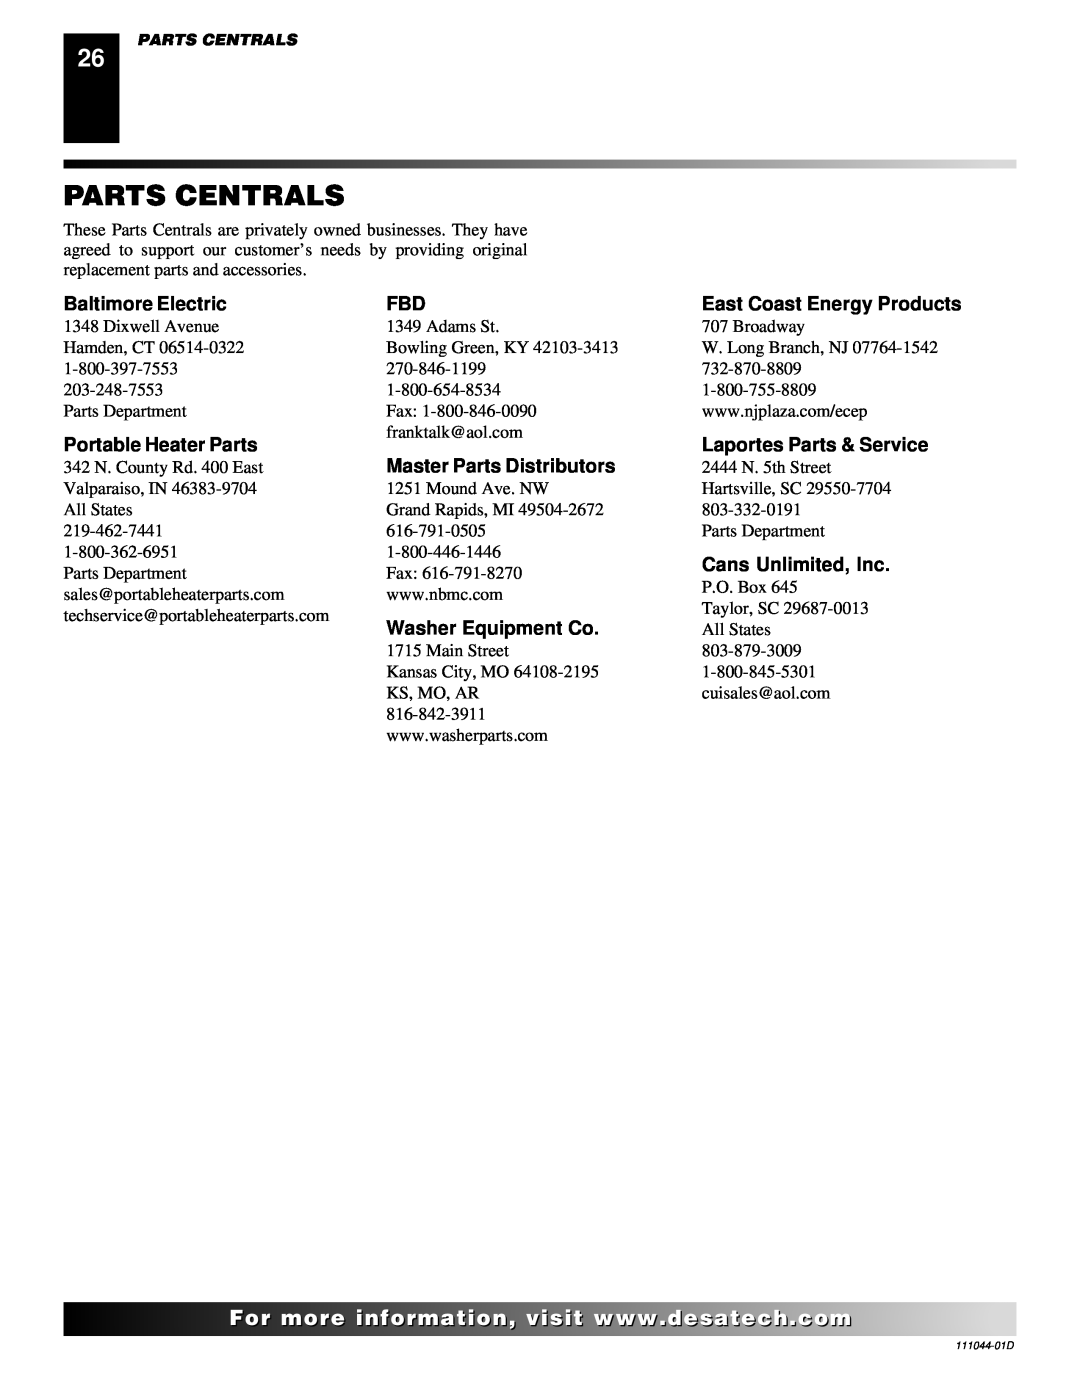 Desa Tech CGCFTP Parts Centrals, Baltimore Electric, Portable Heater Parts, Laportes Parts & Service, Cans Unlimited, Inc 